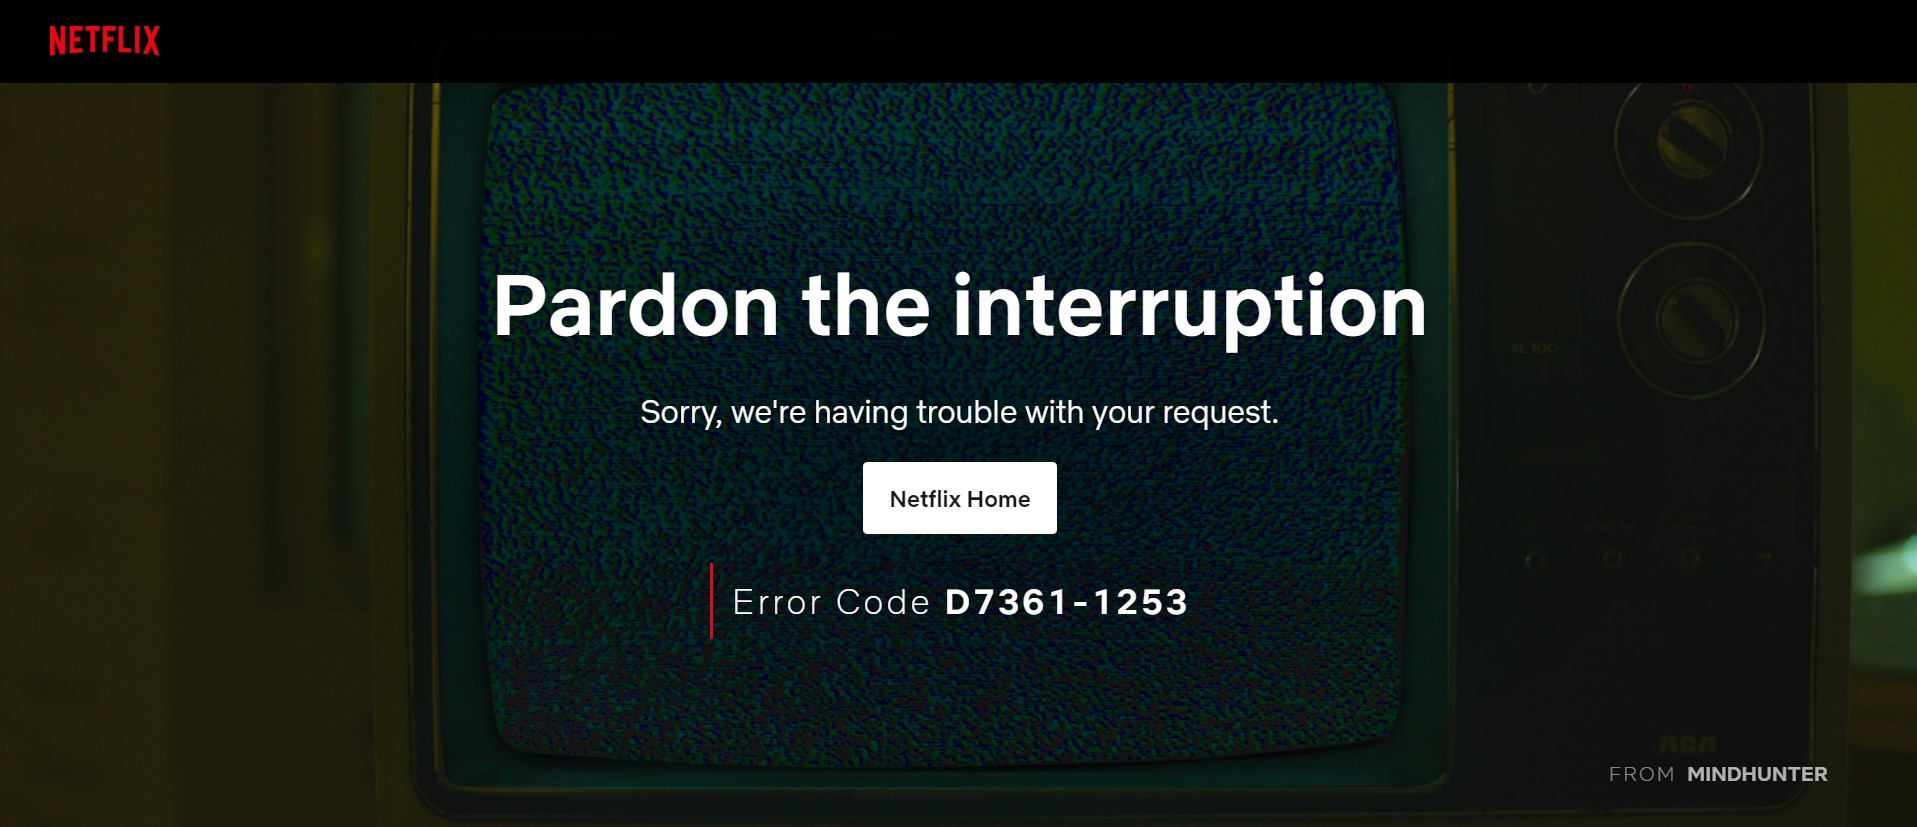 How To Fix Netflix Error Code D7361 1253 Droidwin